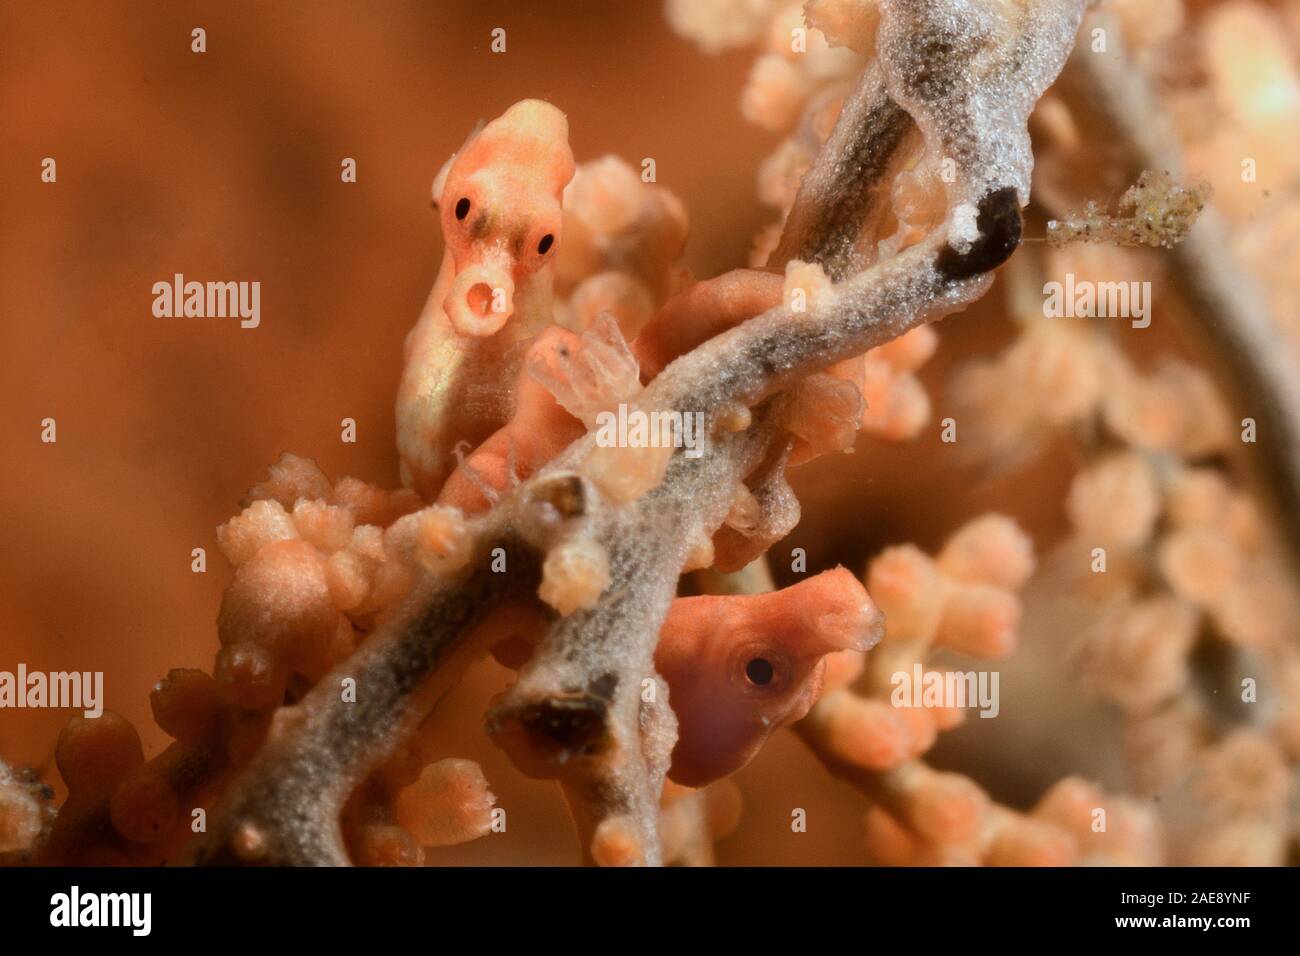 Cavalluccio marino pigmeo, Hippocmpus denise, Tulamben, Indonesia. Il minuscolo cavalluccio marino Denise è fra i più piccoli cavallucci marini nel mondo. Le loro dimensioni e capacità Foto Stock